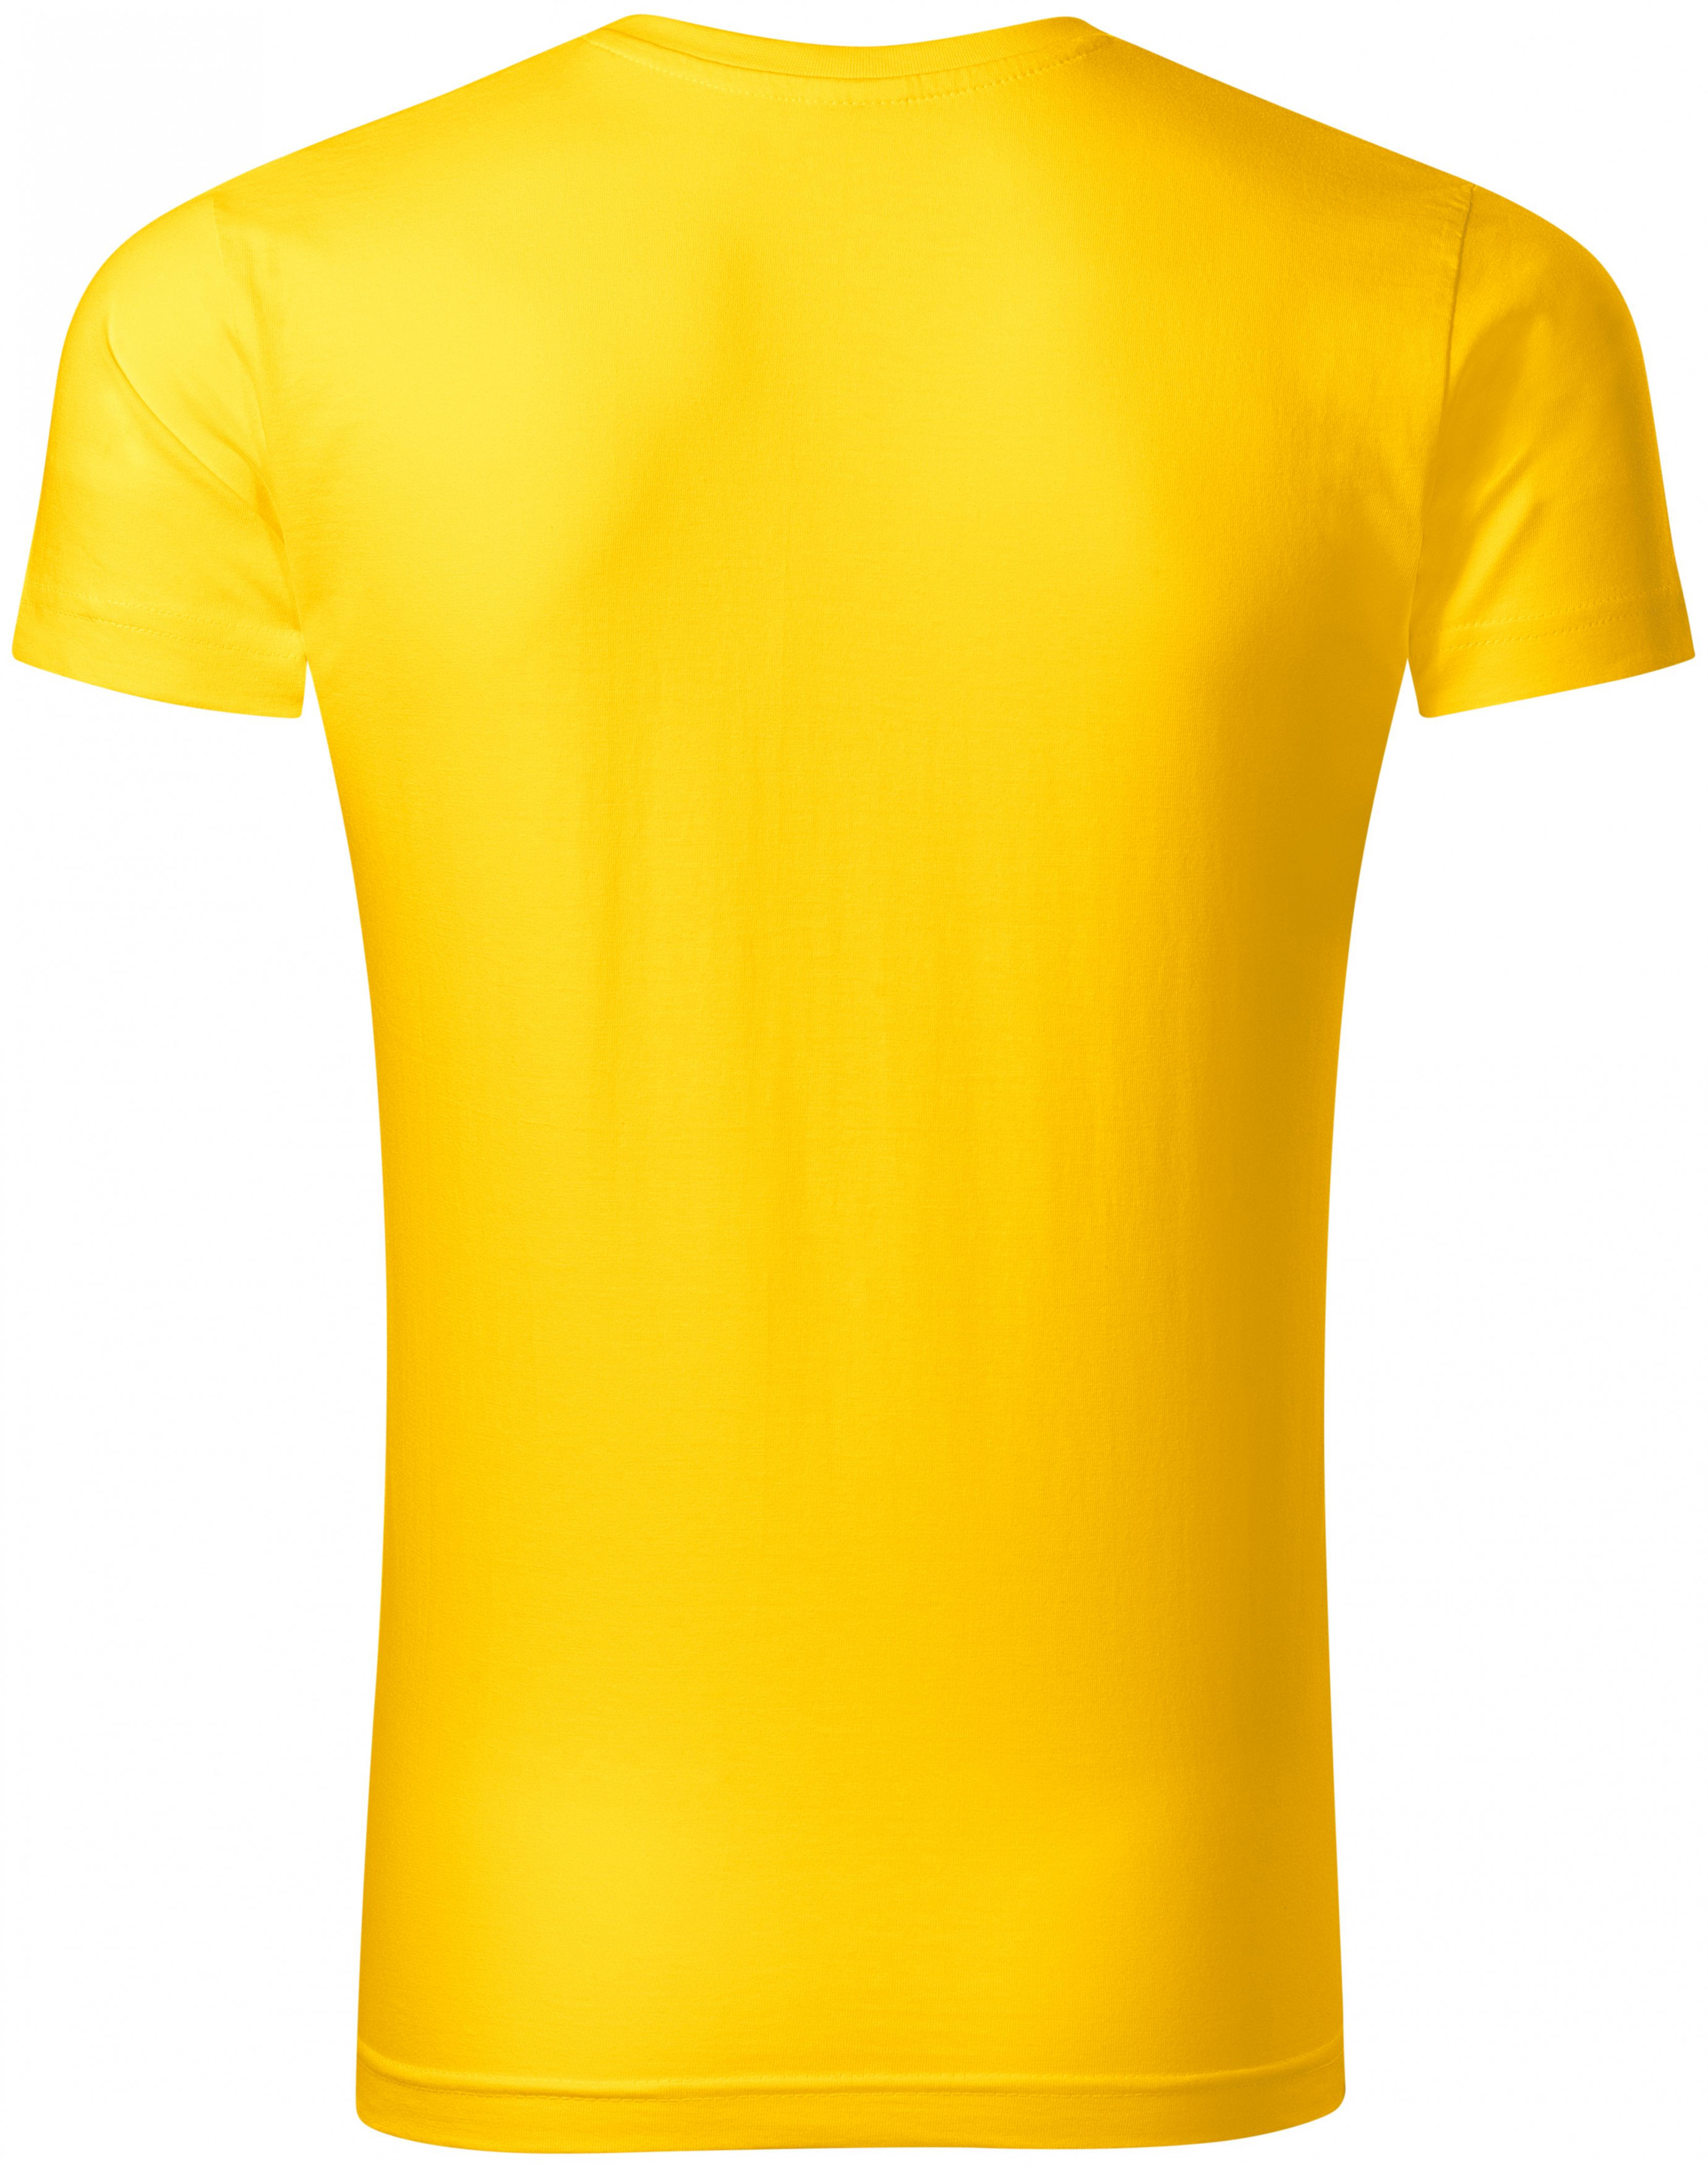 Pánske priliehavé tričko, žltá, XL